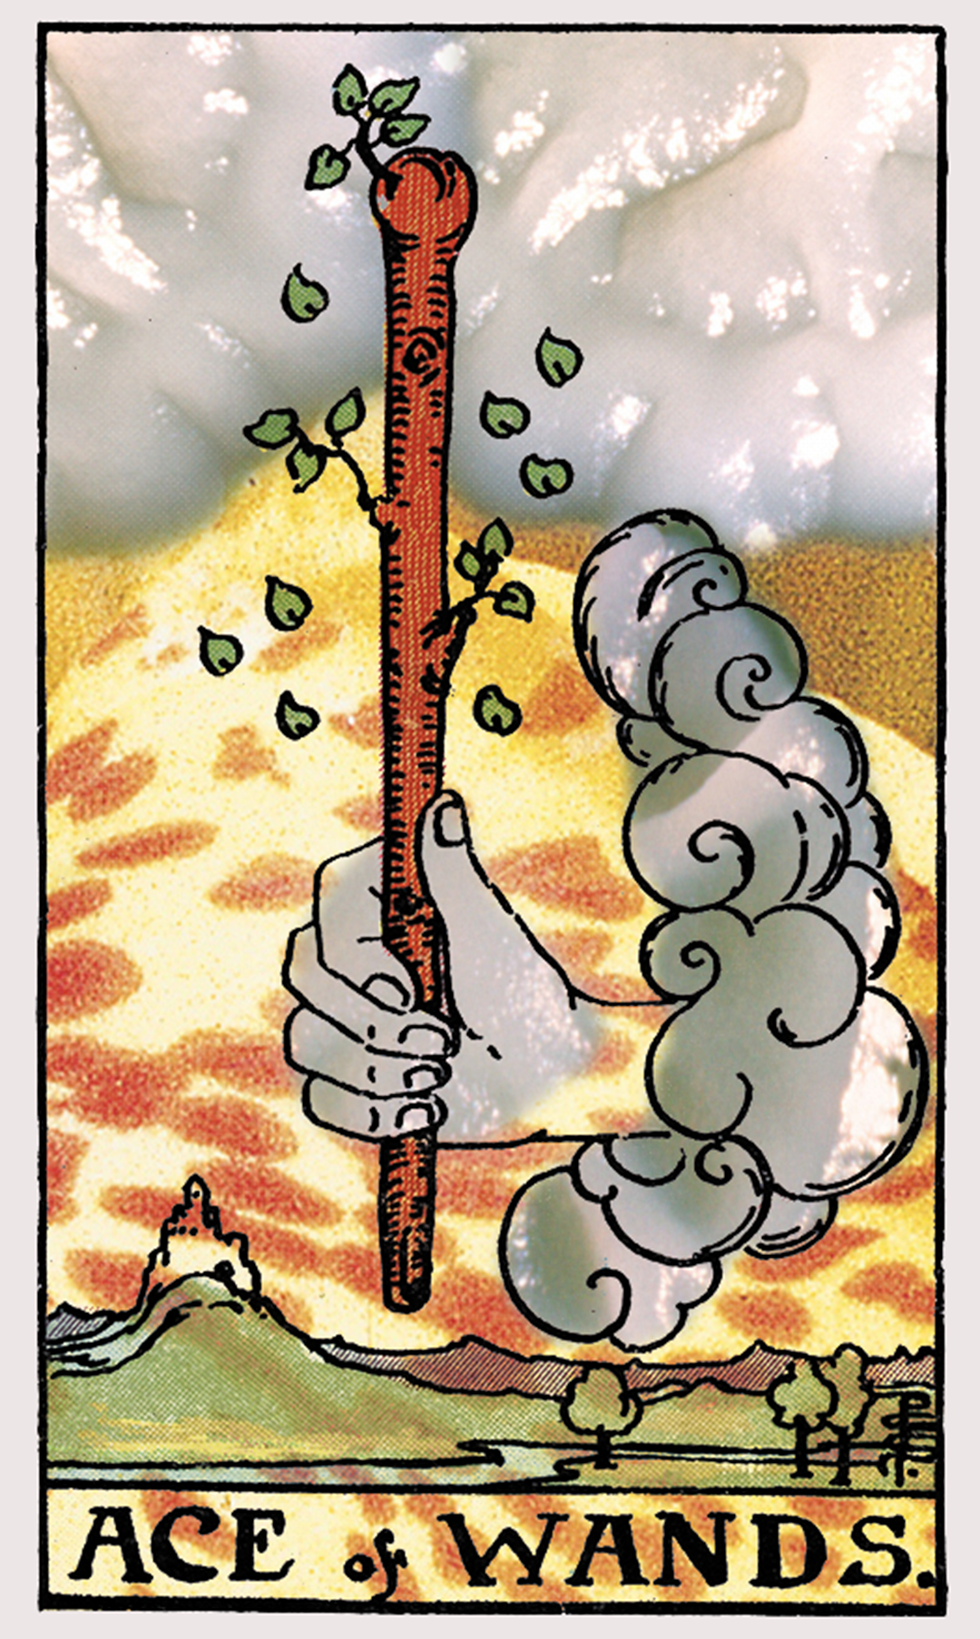 ace of wands tarot card